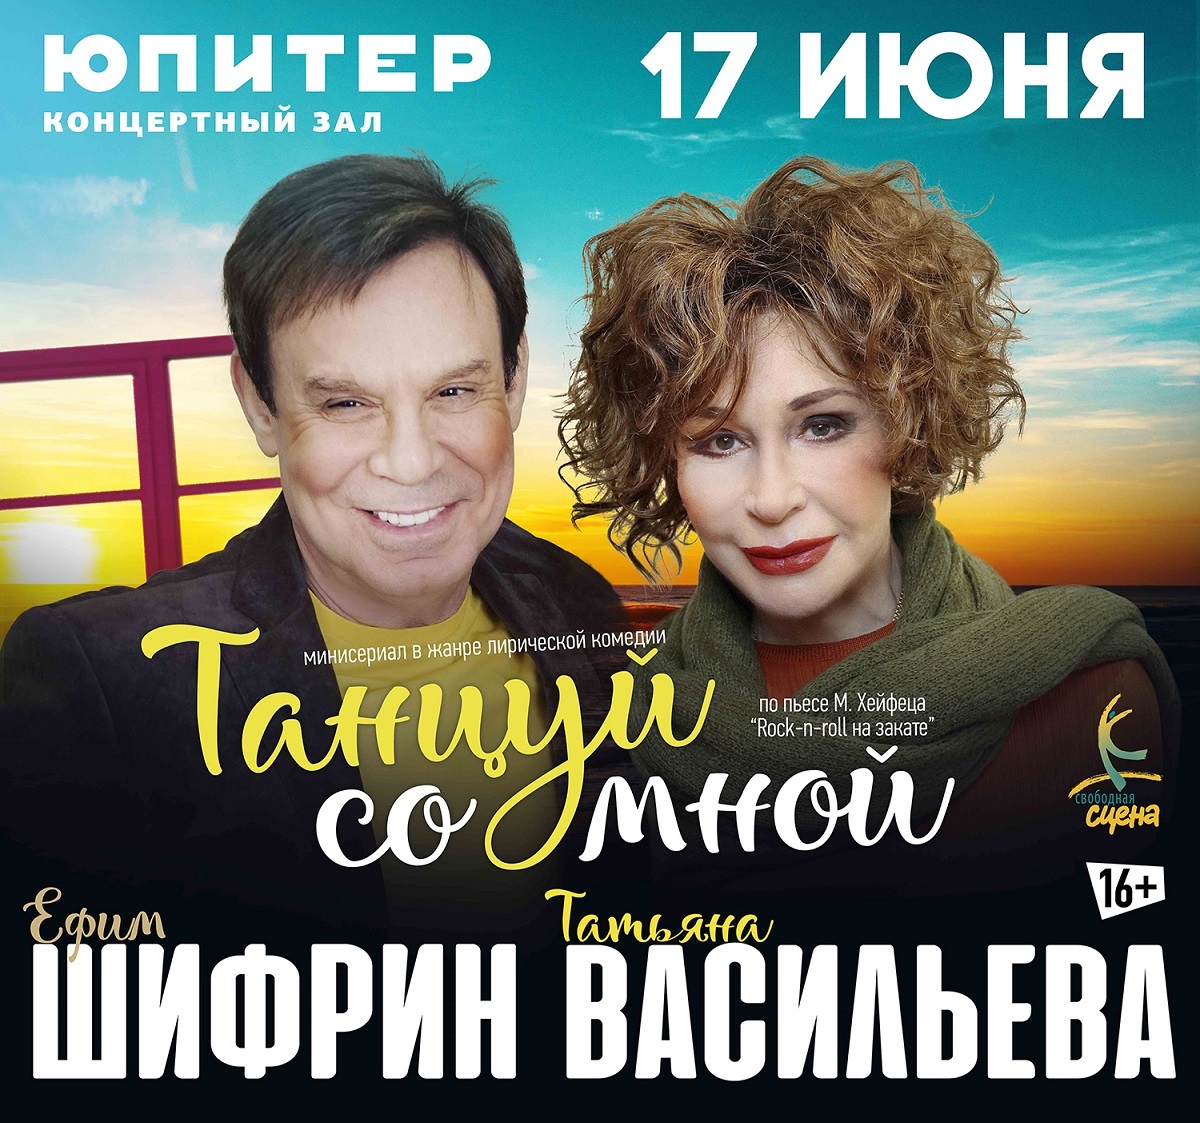 Спектакль «Танцуй со мной» состоится в Нижнем Новгороде 17 июня